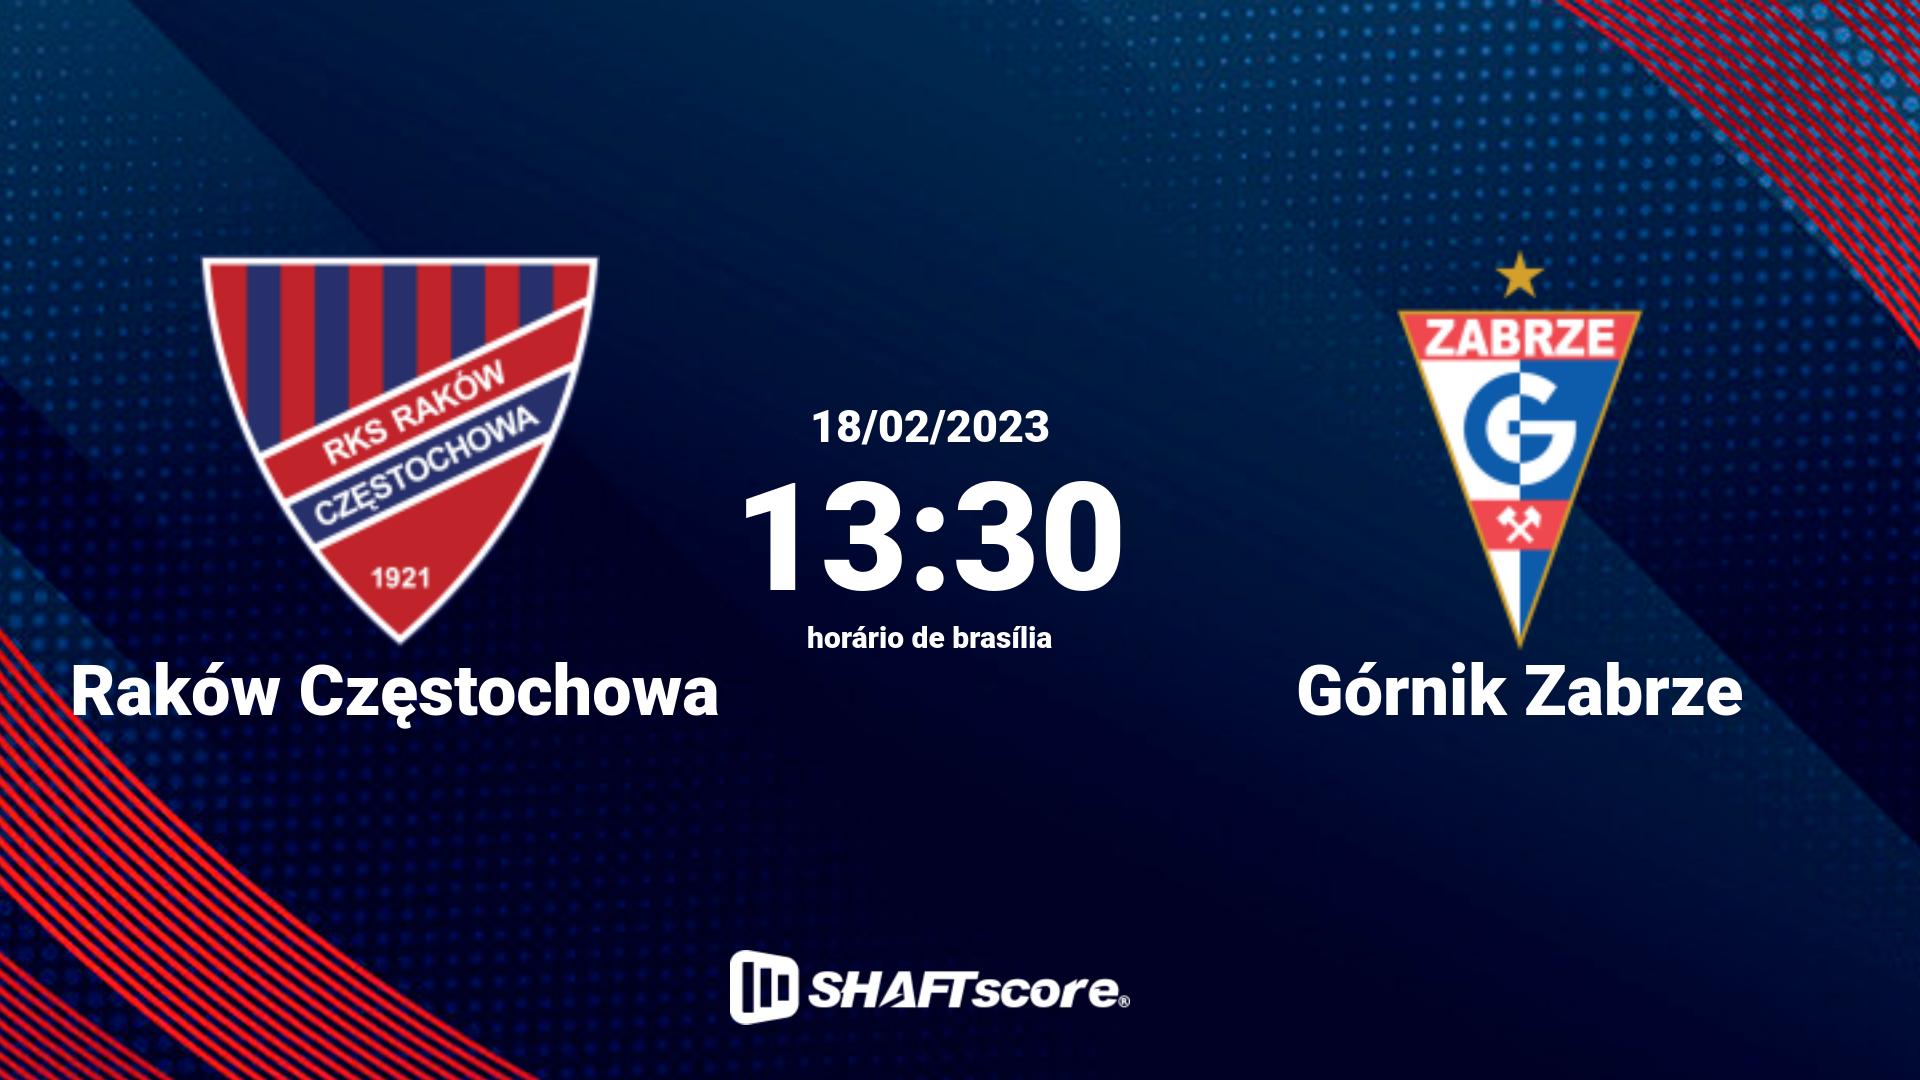 Estatísticas do jogo Raków Częstochowa vs Górnik Zabrze 18.02 13:30